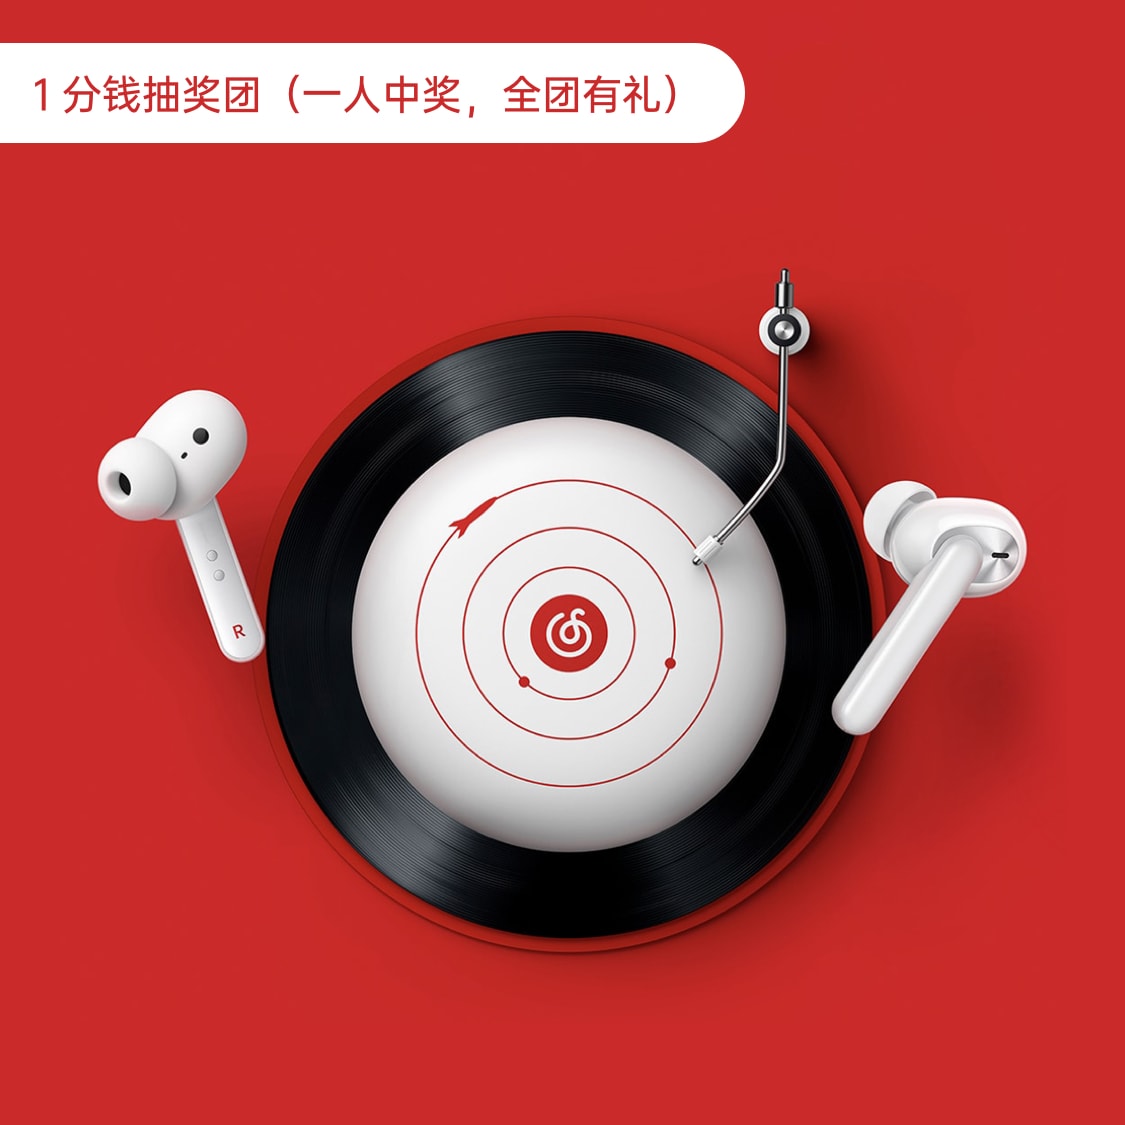 【1分钱抽奖】网易云定制款W31耳机礼盒